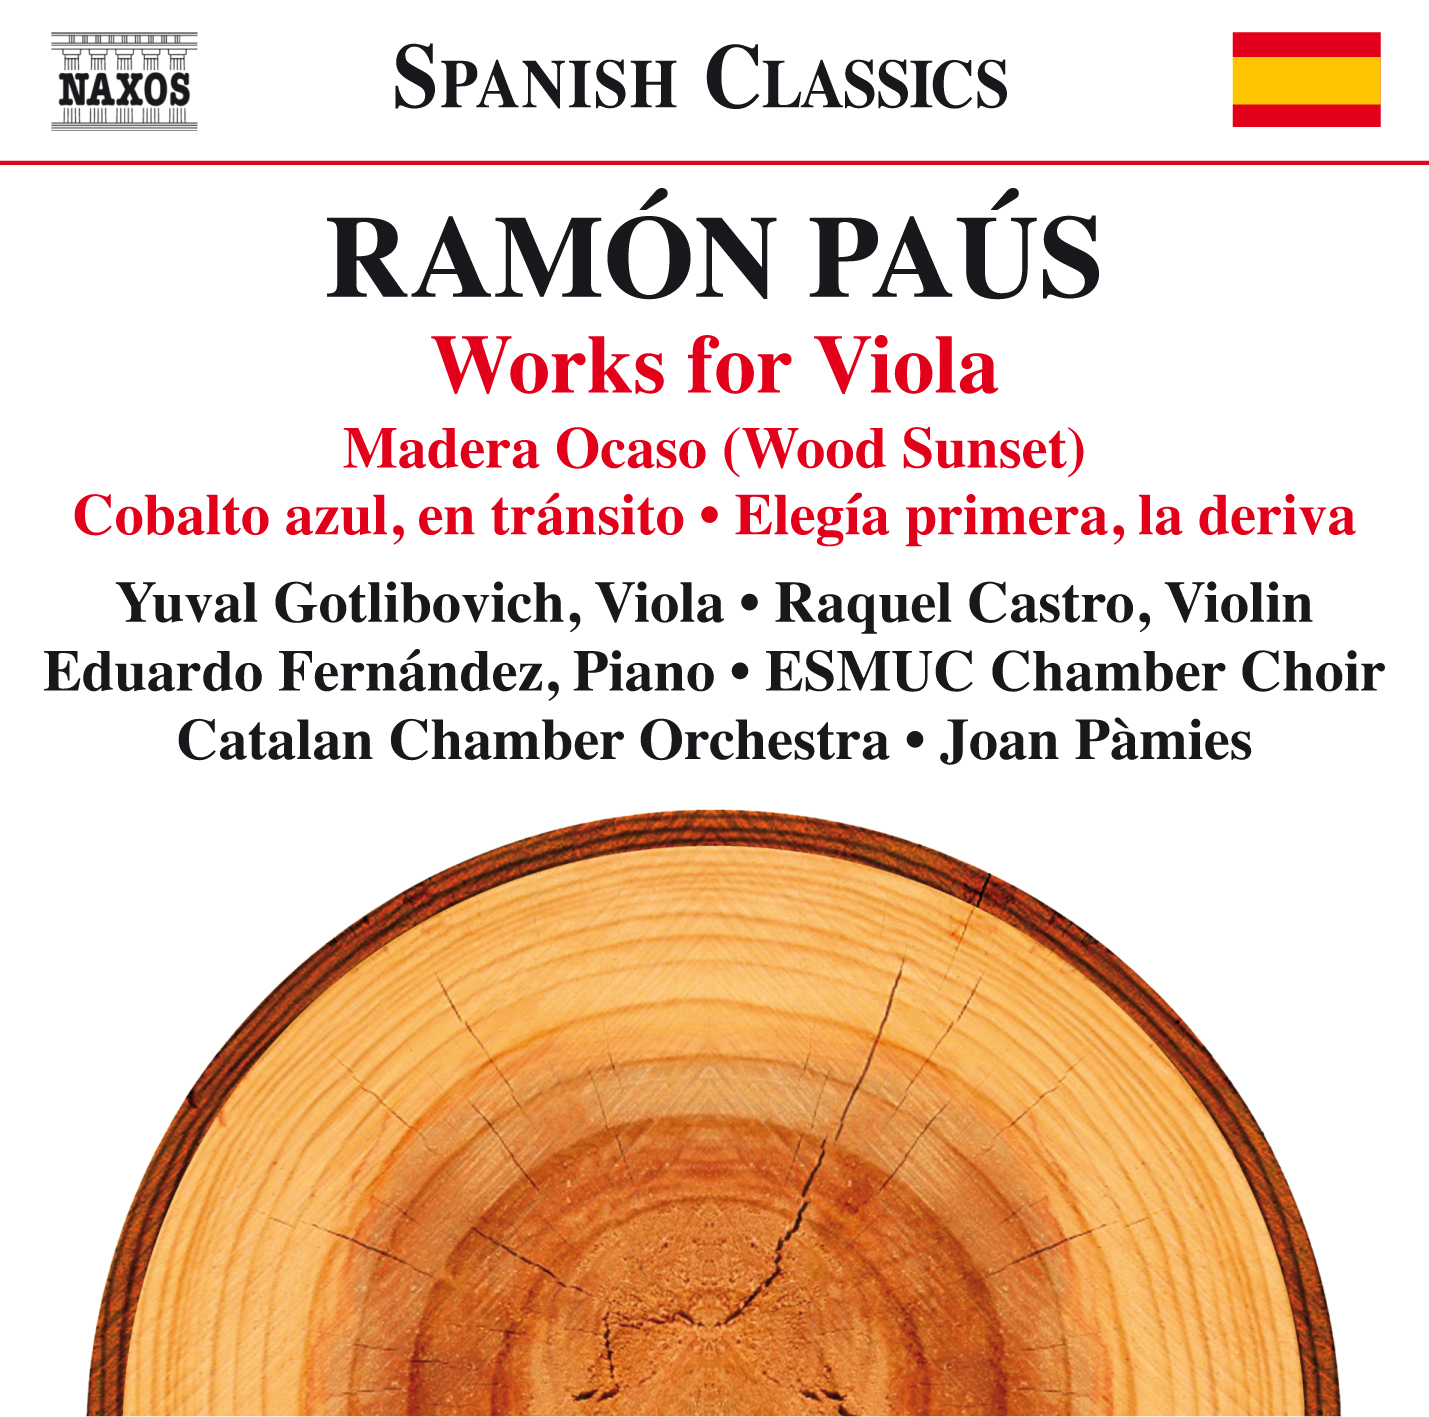 Naxos edita el último trabajo discográfico de Ramón Paús dedicado a la viola